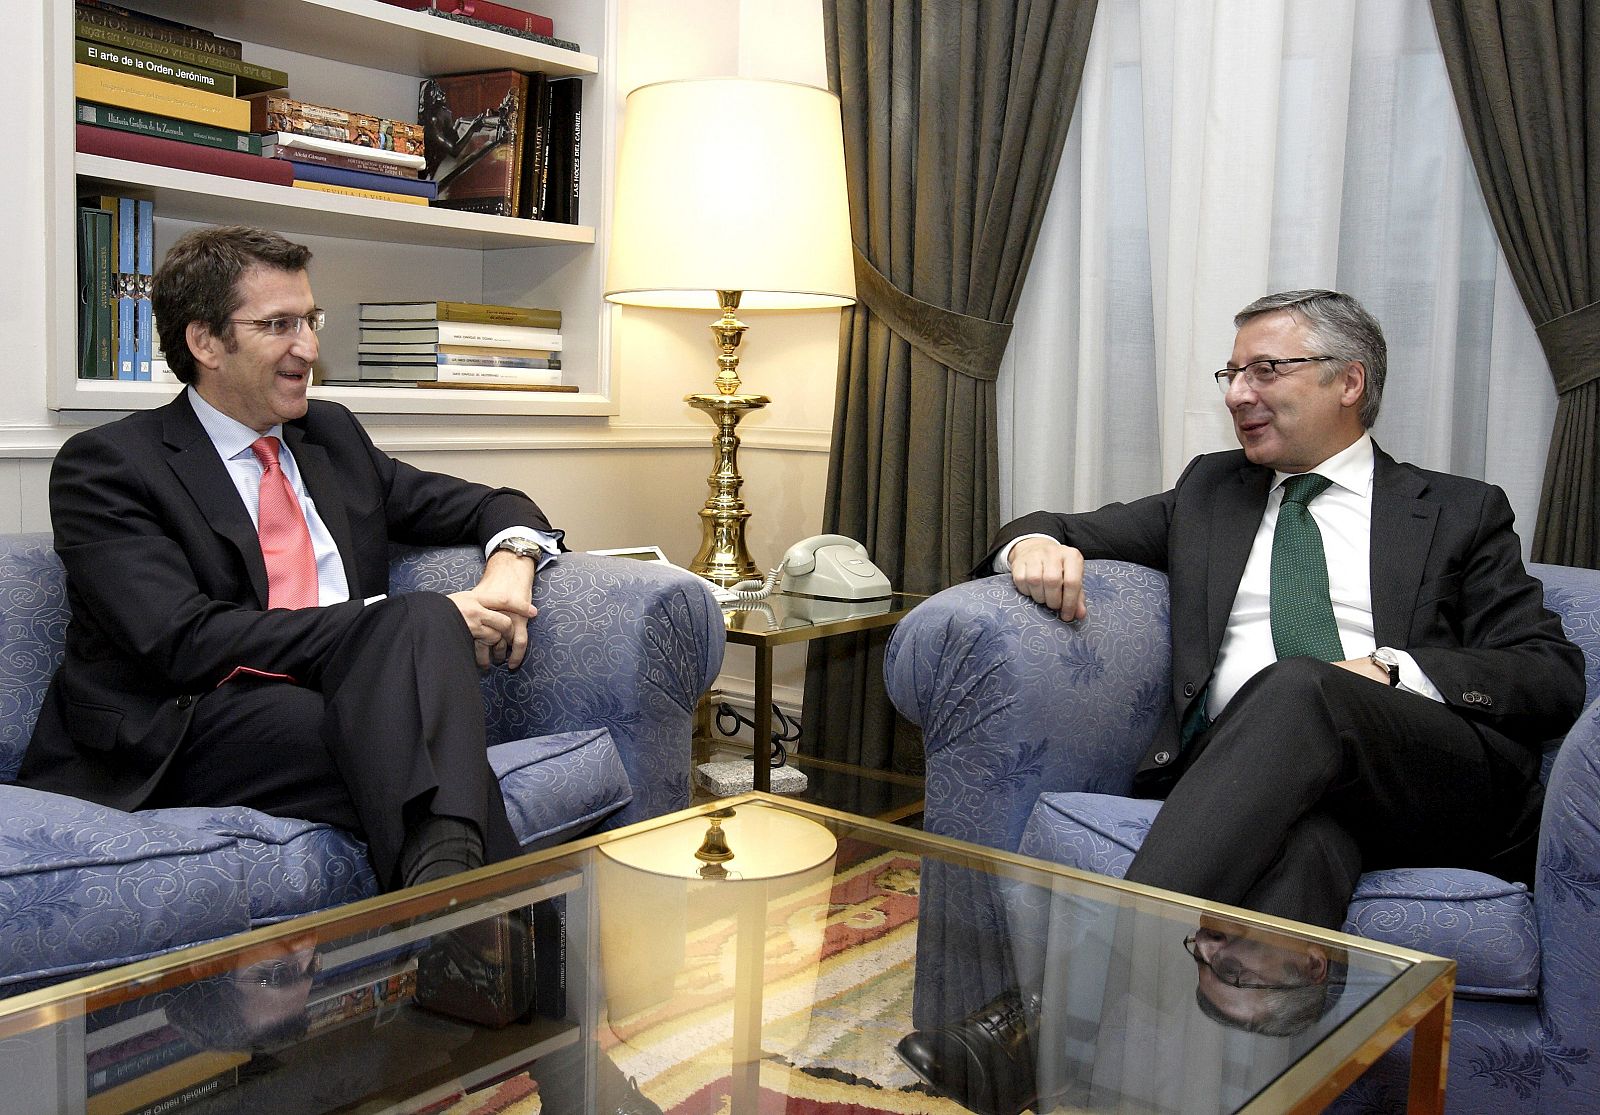 Fotografía facilitada por el Ministerio de Fomento que muestra al titular de dicho ministerio, José Blanco, con el presidente de la Xunta, Alberto Núñez Feijóo